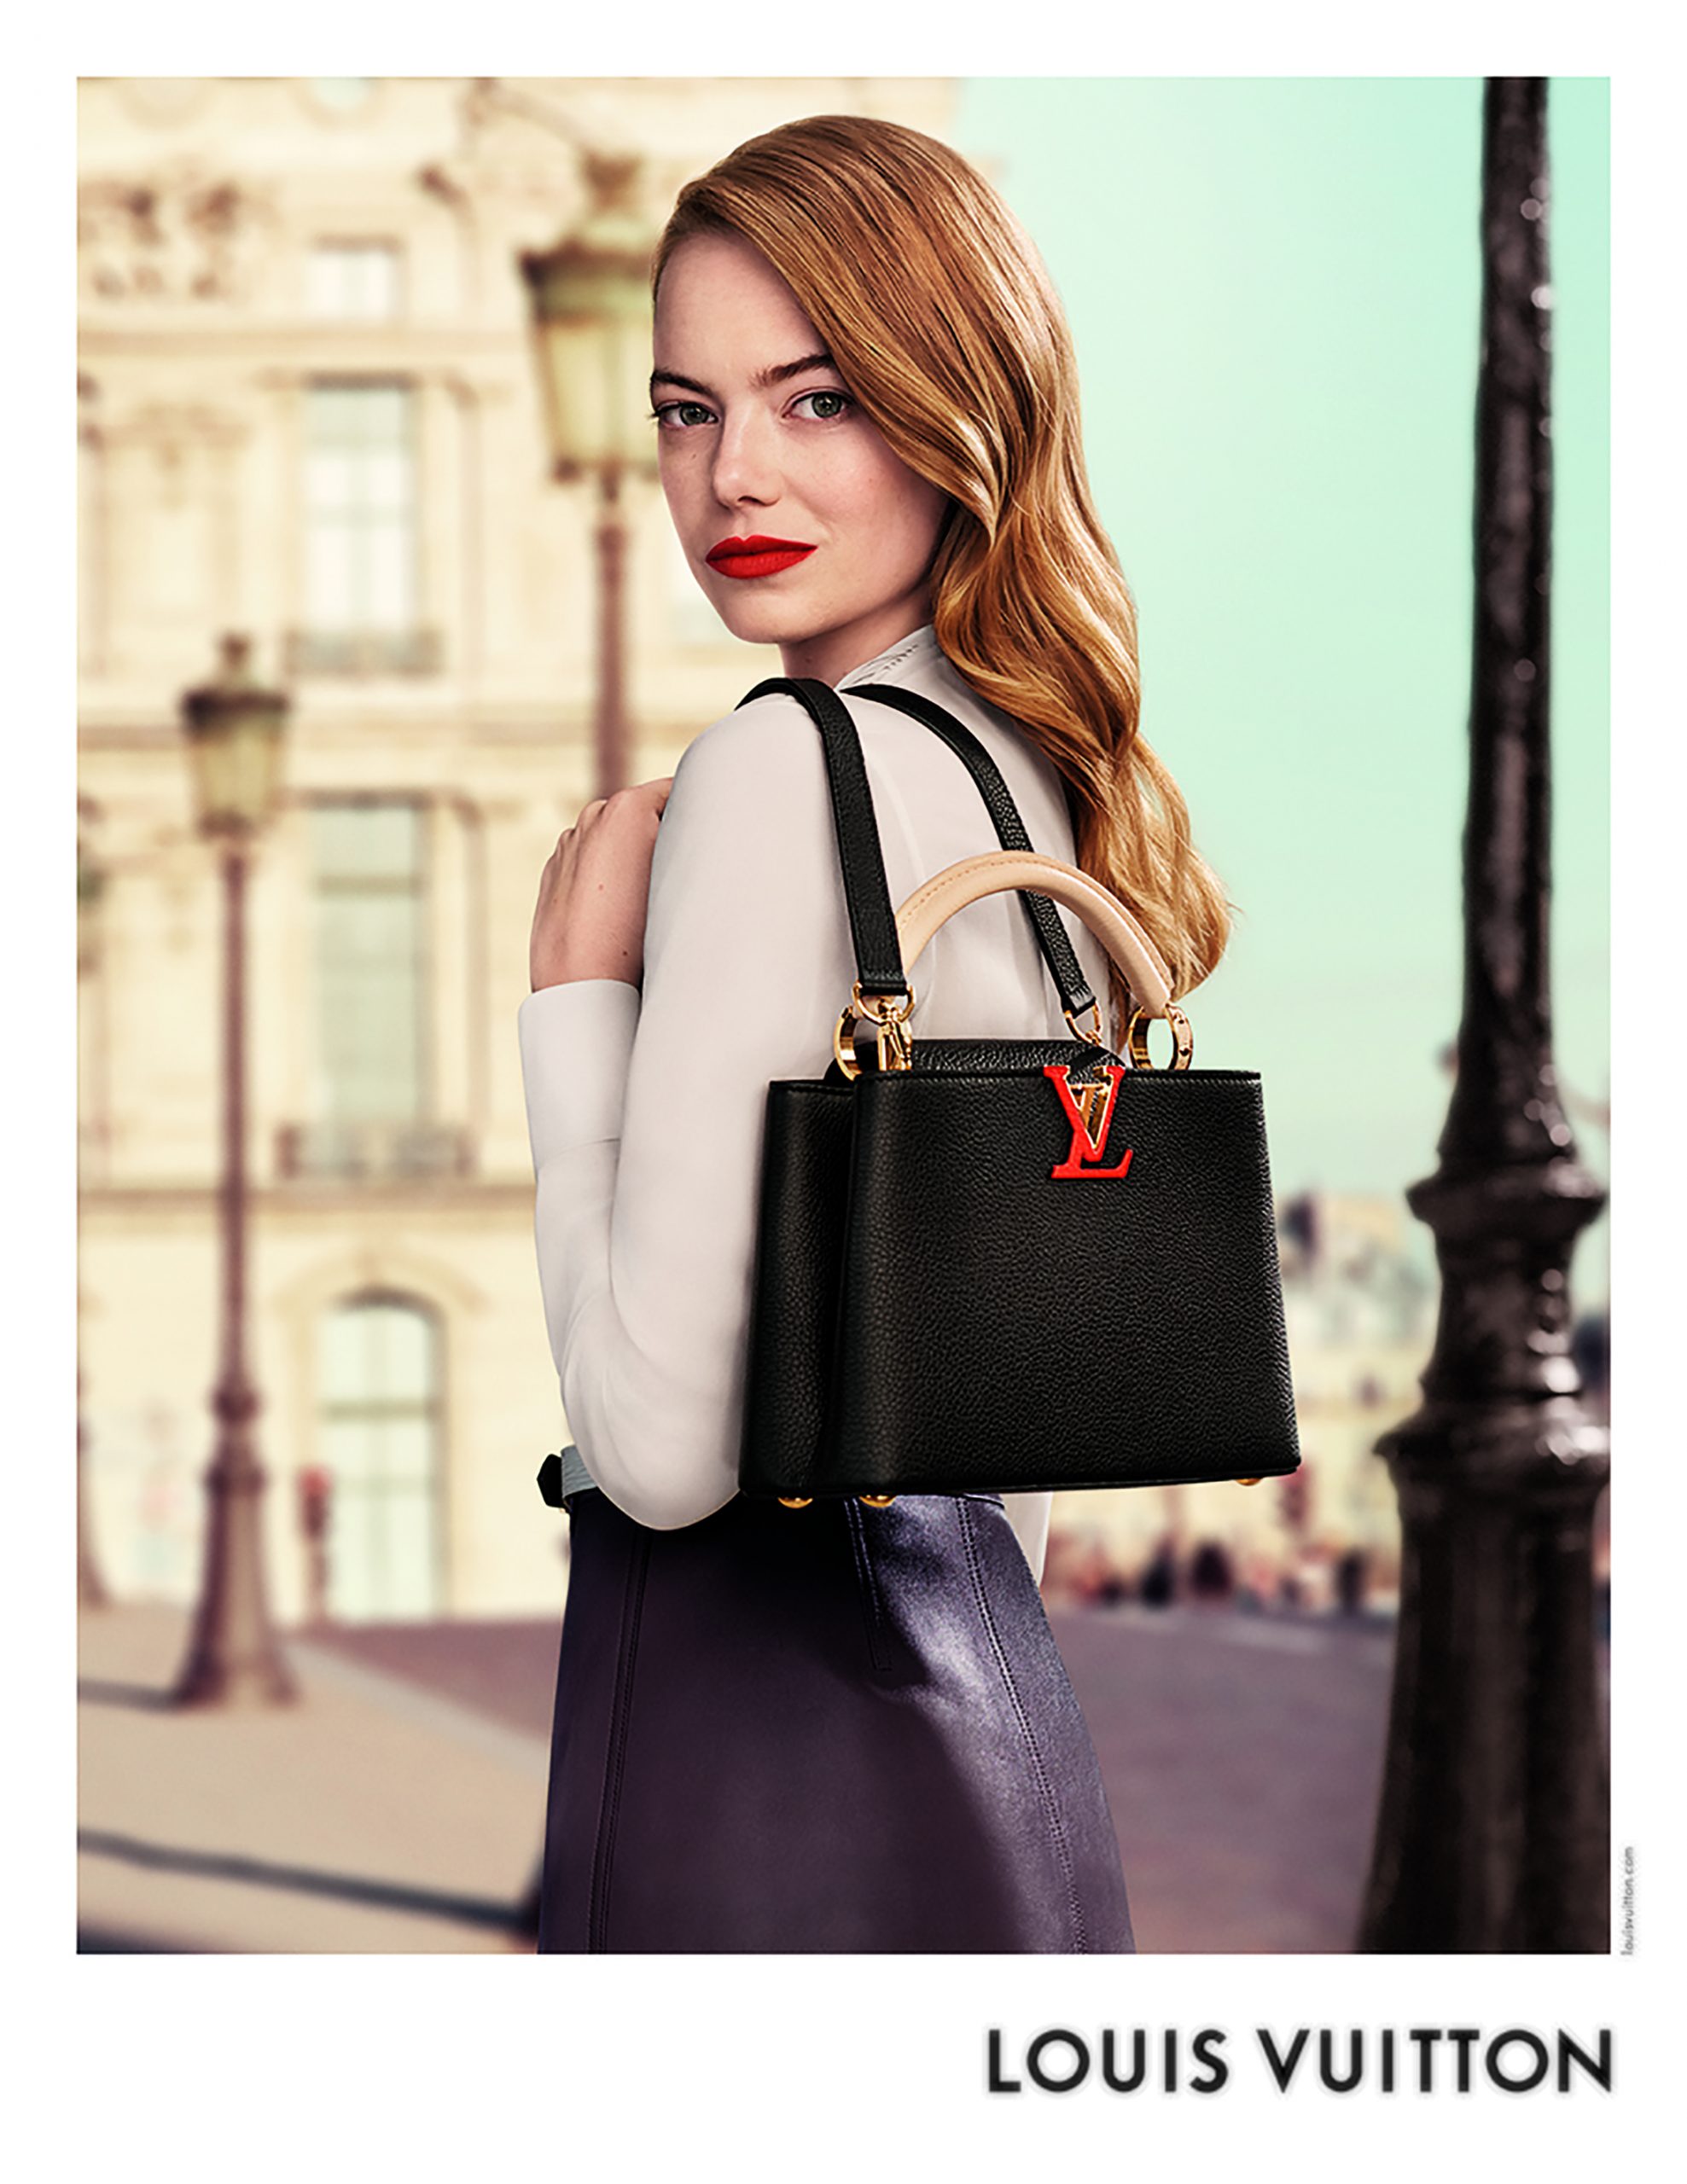 Kaia Gerber For Louis Vuitton Spring 2020 Campaign